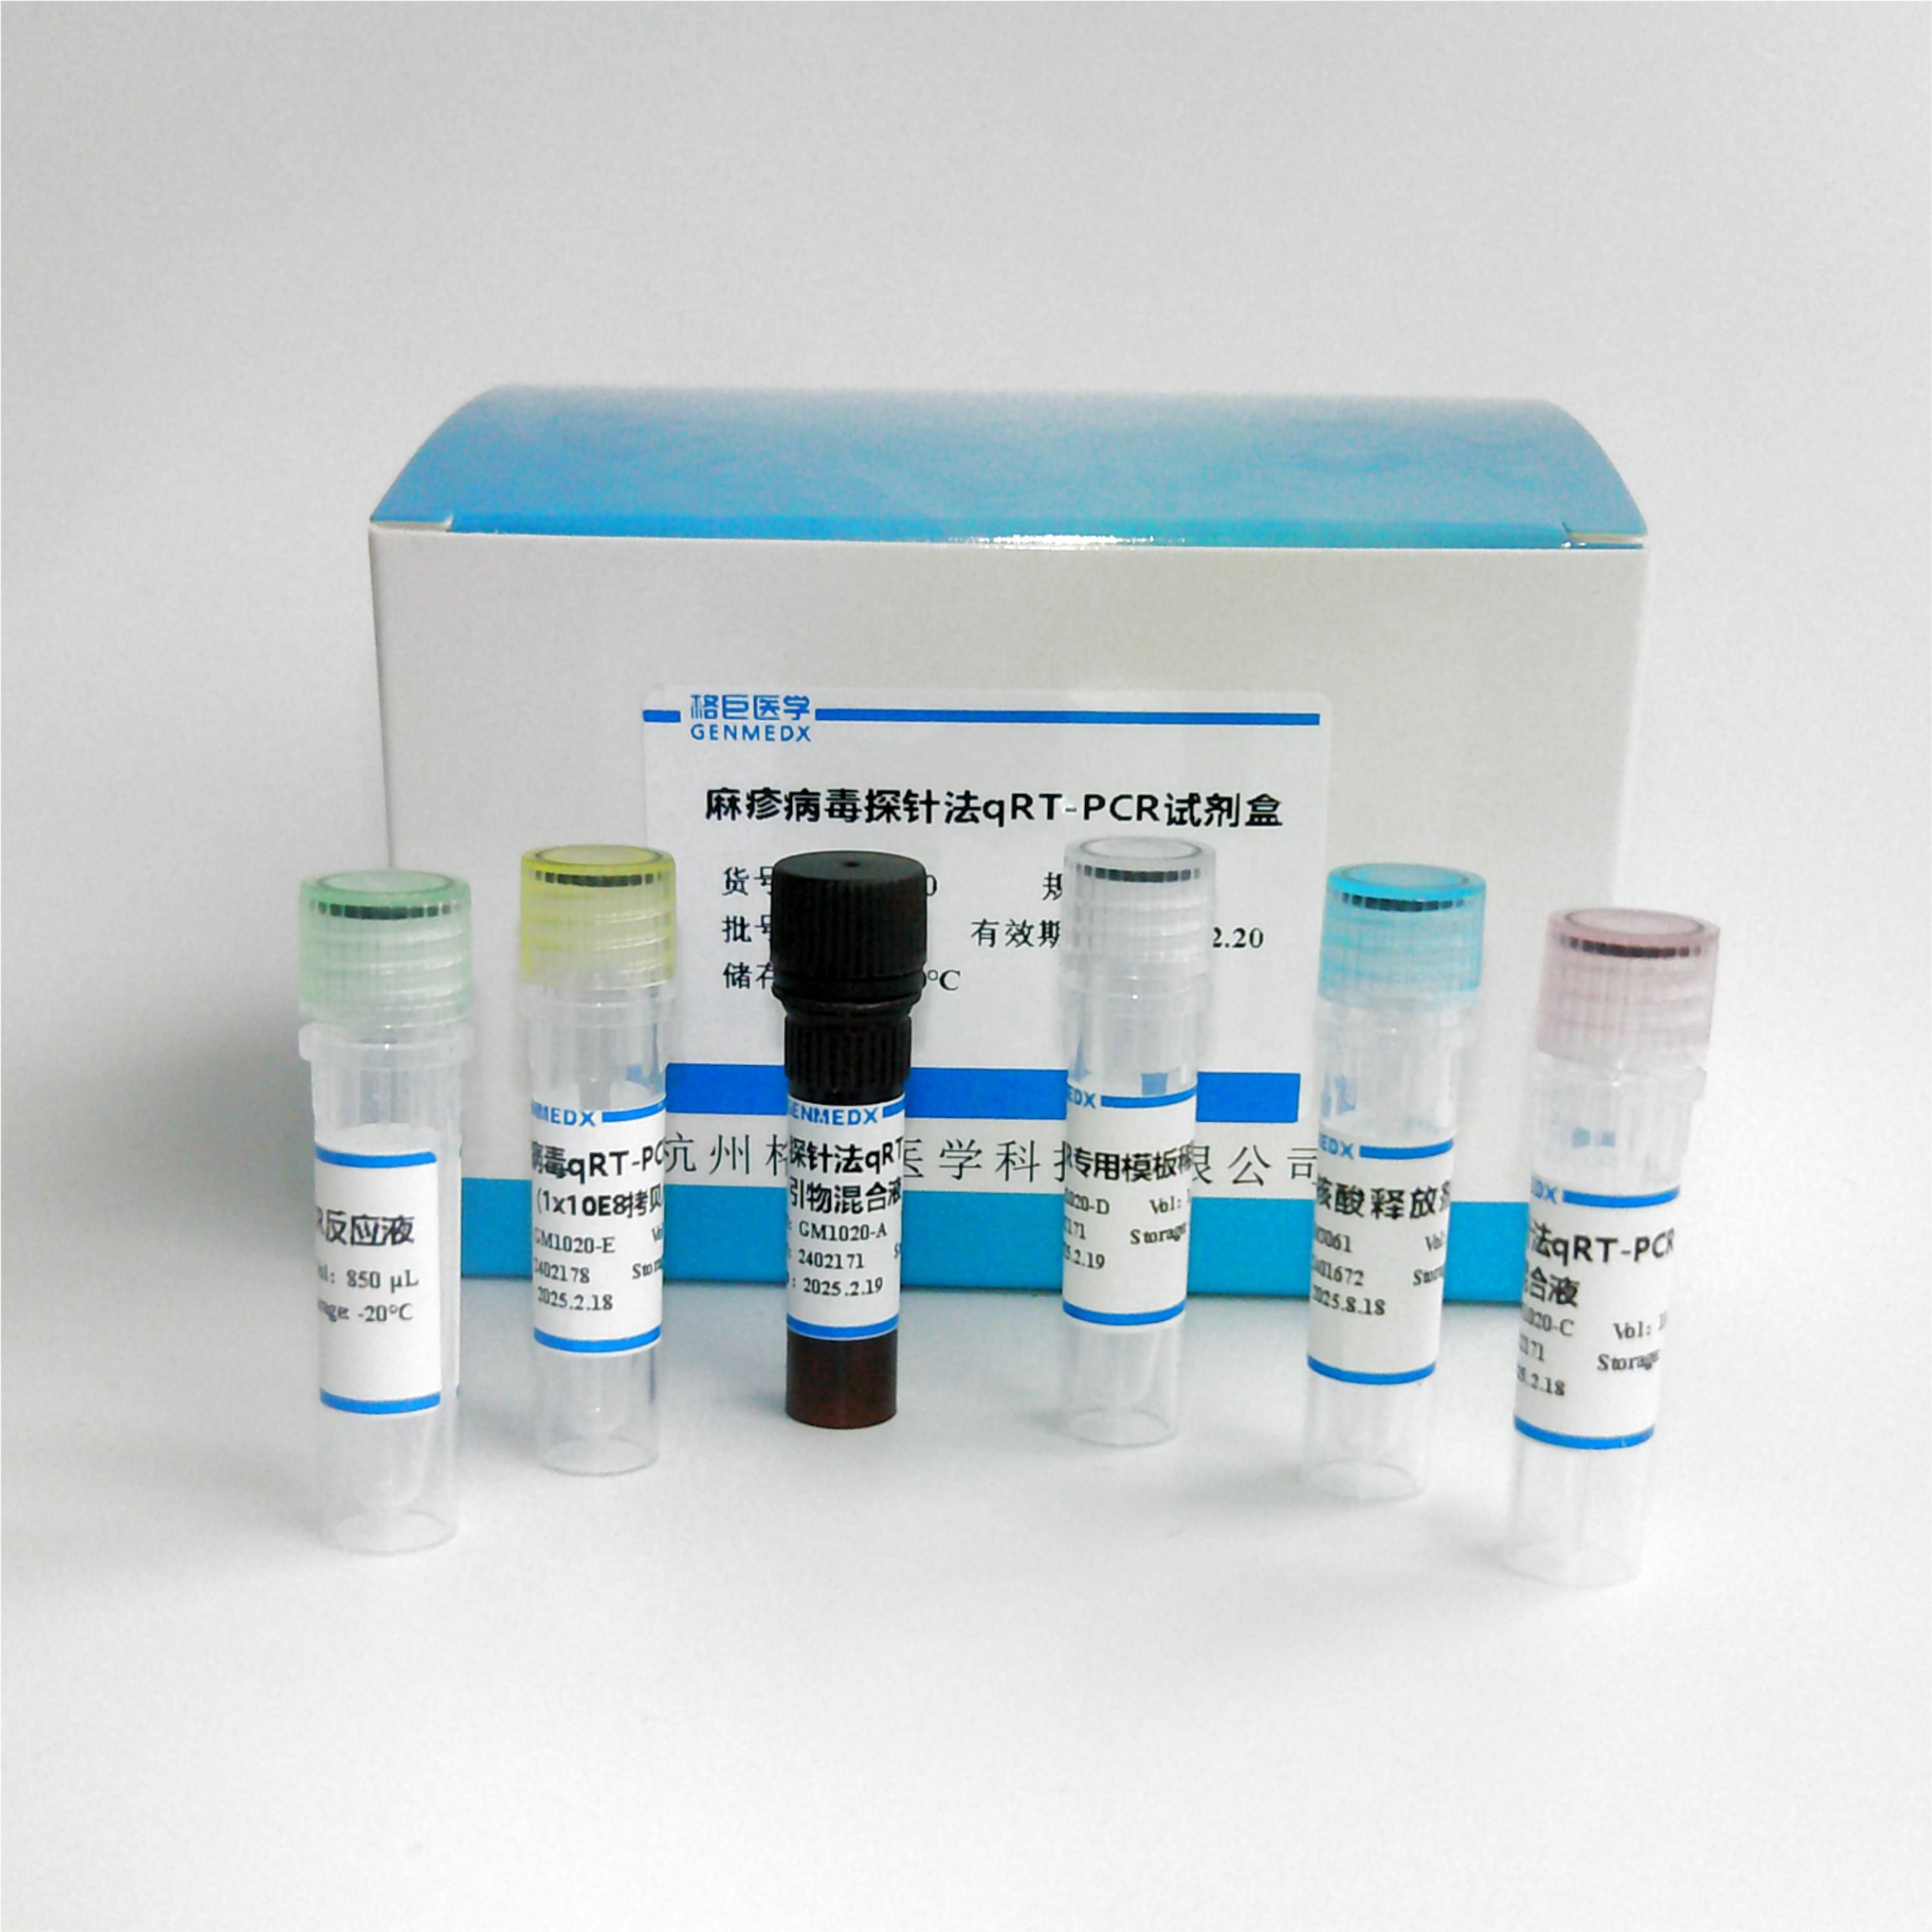 猪传染性胃肠炎病毒探针法荧光定量RT-PCR试剂盒